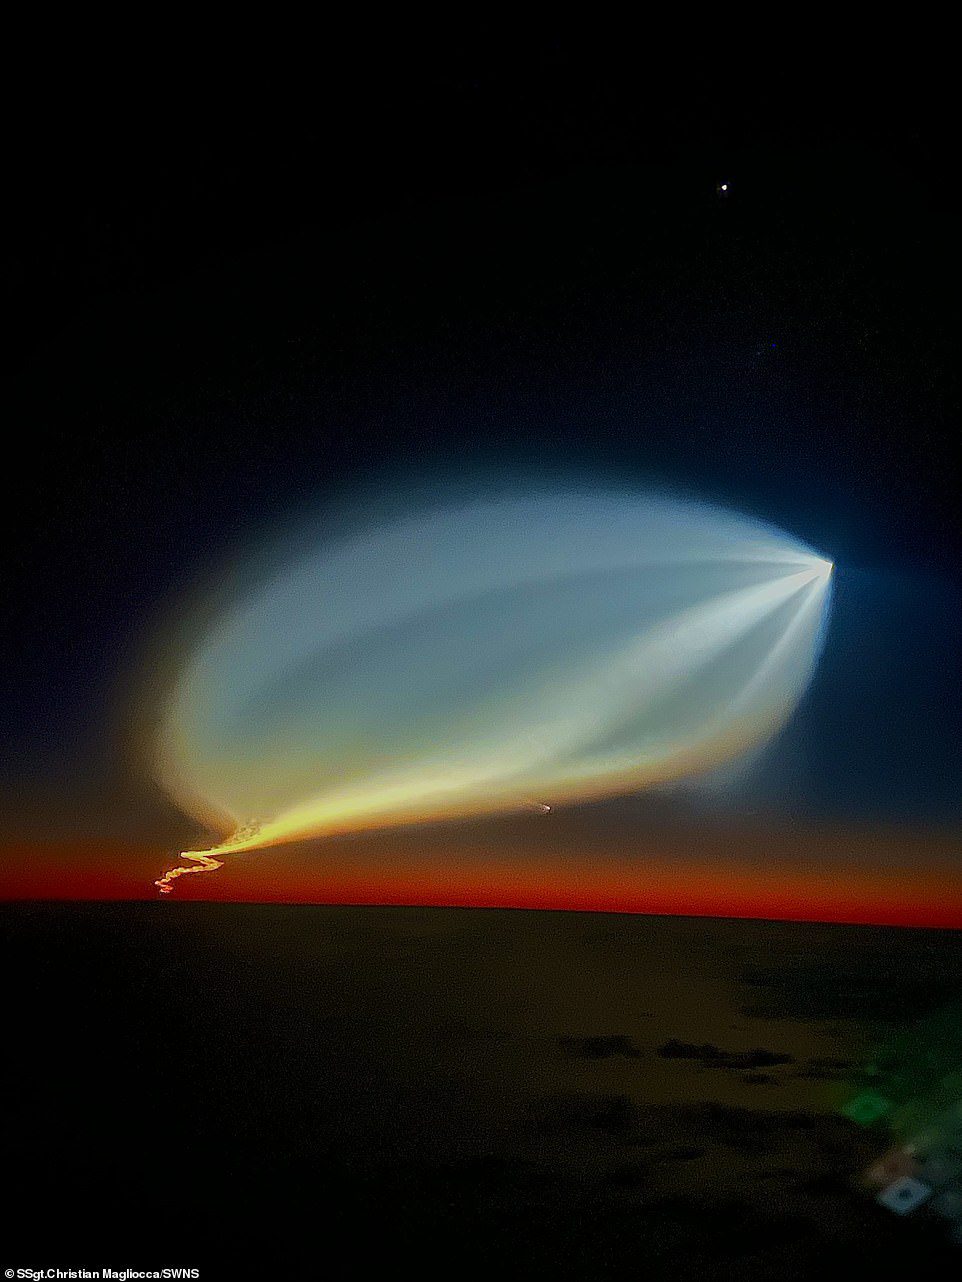 Brilhante: pode ter uma aparência estranha, parecida com um OVNI, mas o florescimento da luz no céu é na verdade parte das consequências do lançamento do foguete SpaceX